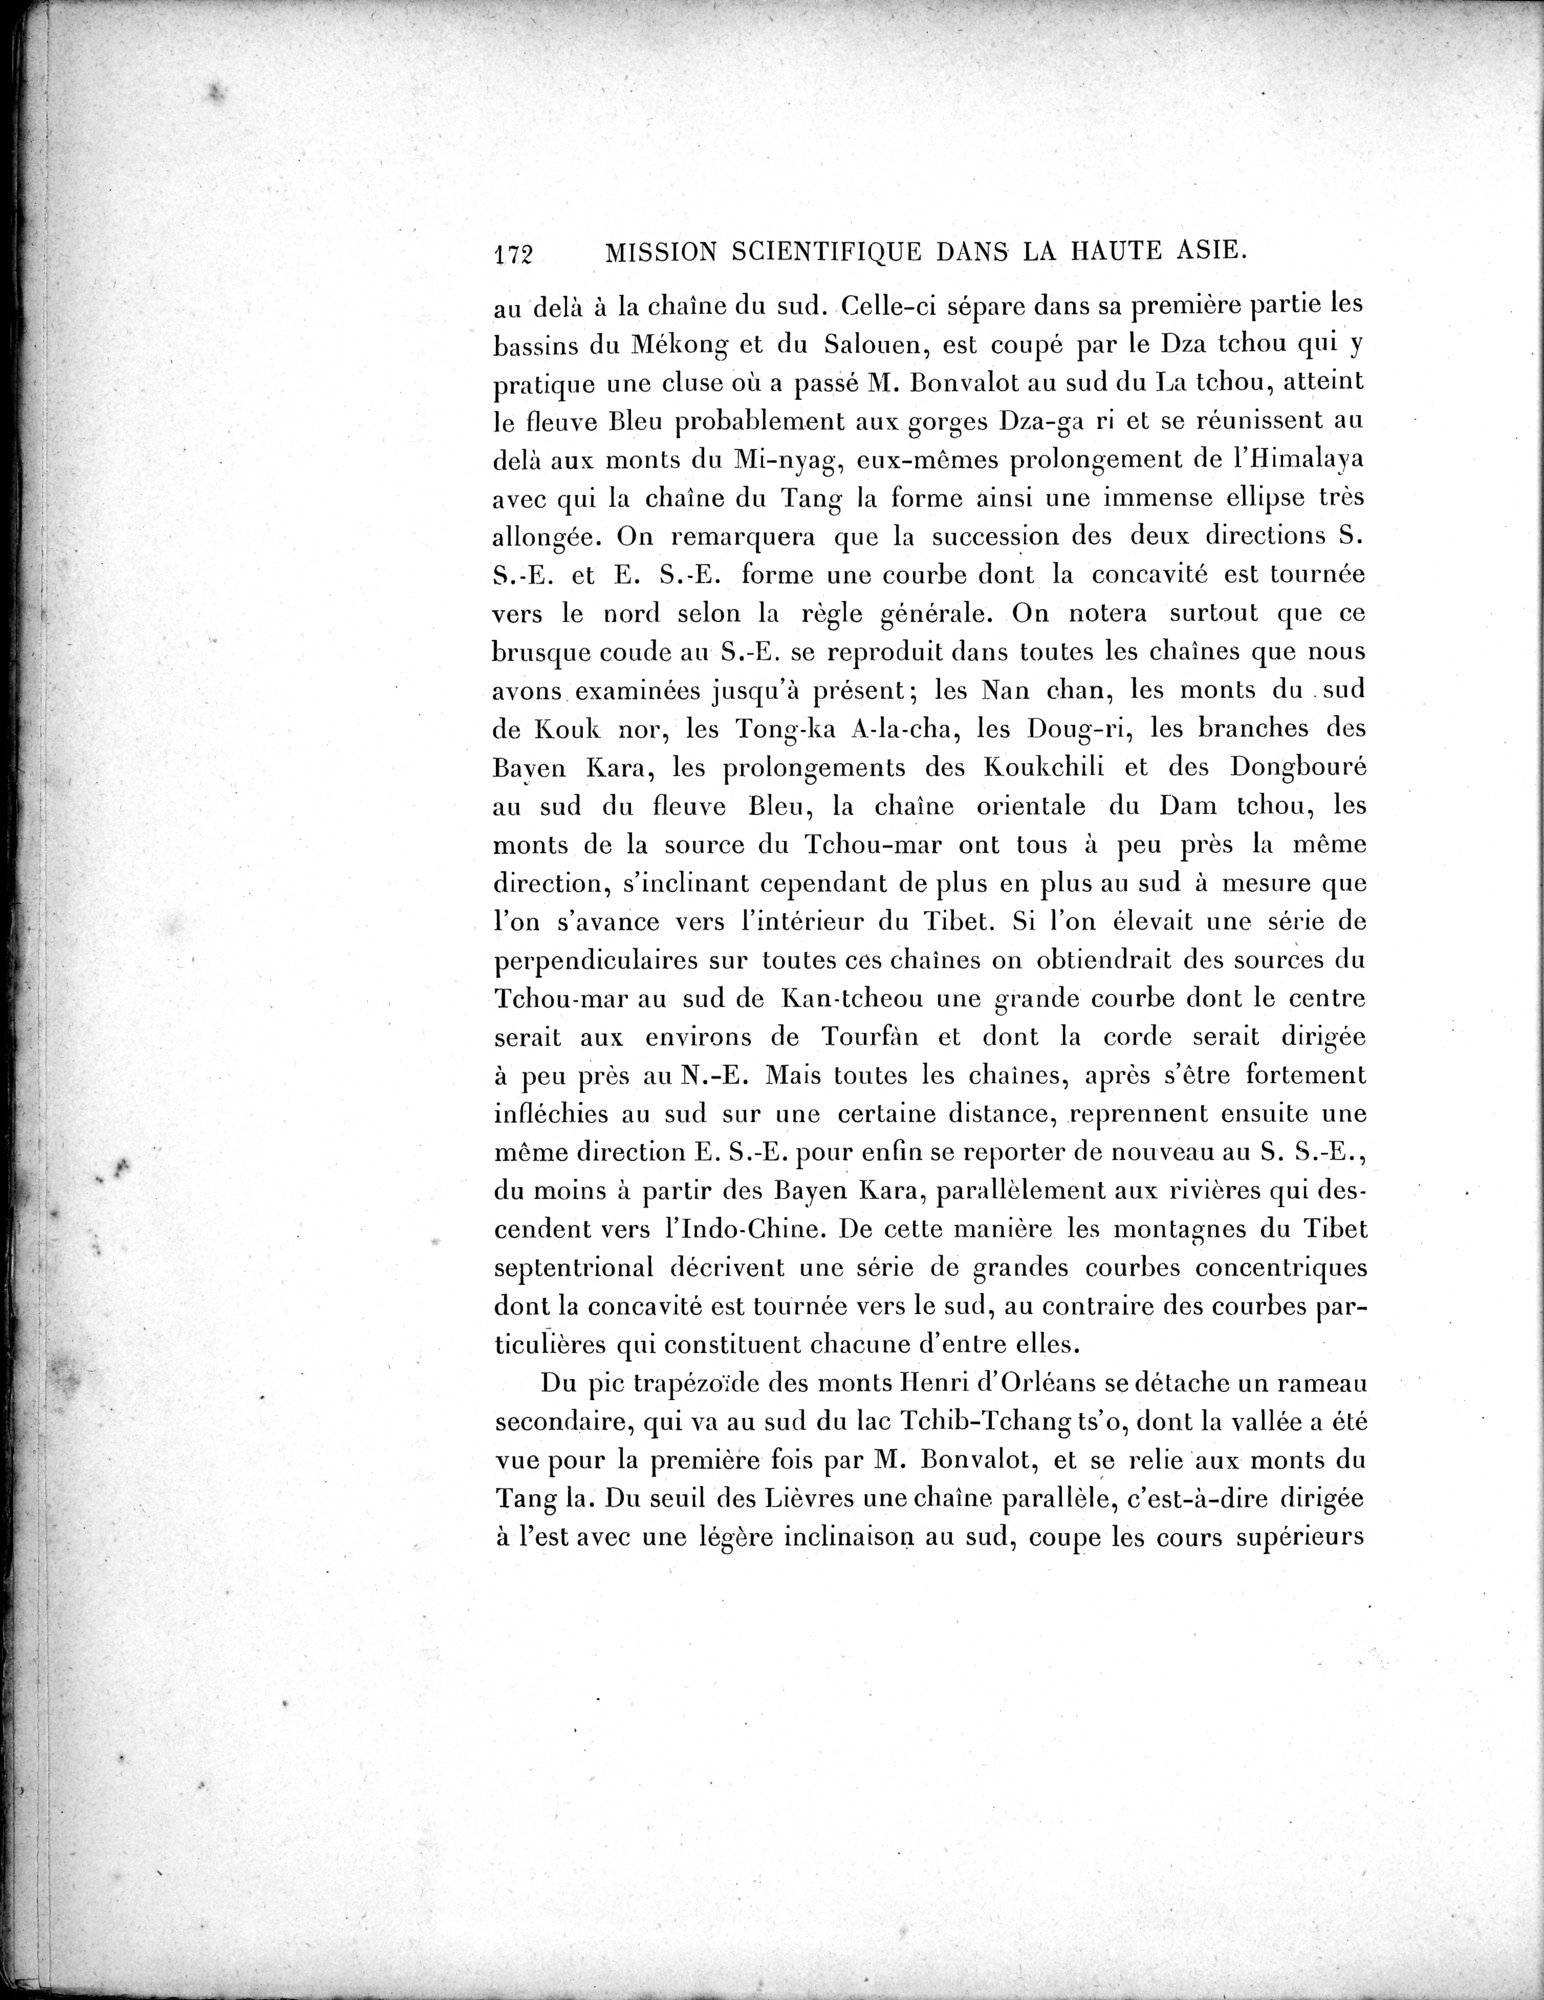 Mission Scientifique dans la Haute Asie 1890-1895 : vol.3 / Page 190 (Grayscale High Resolution Image)